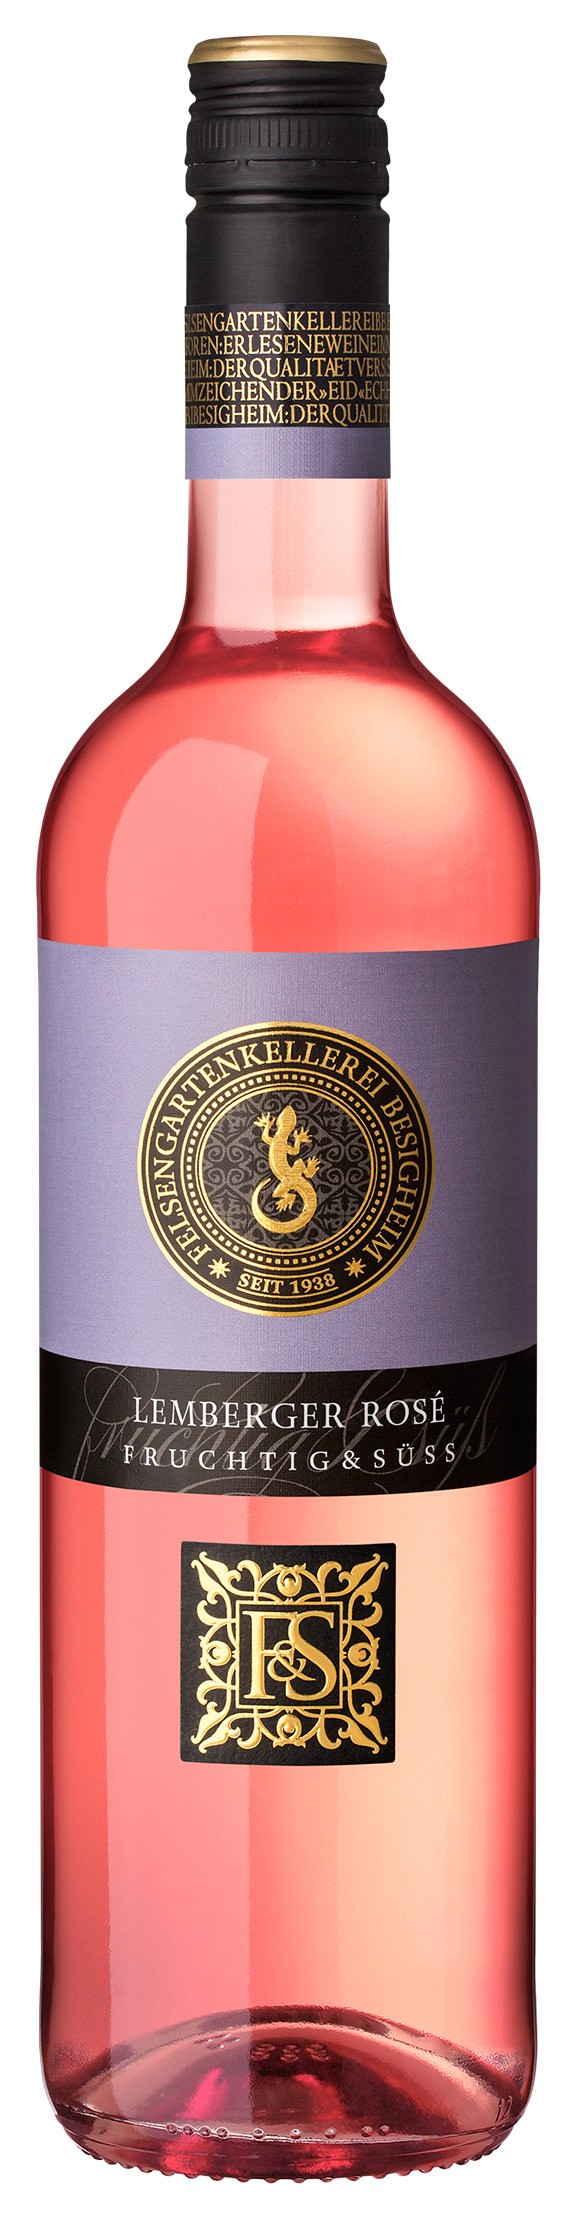 Lemberger Rosé Qualitätswein Unverschämt fruchtig & süss